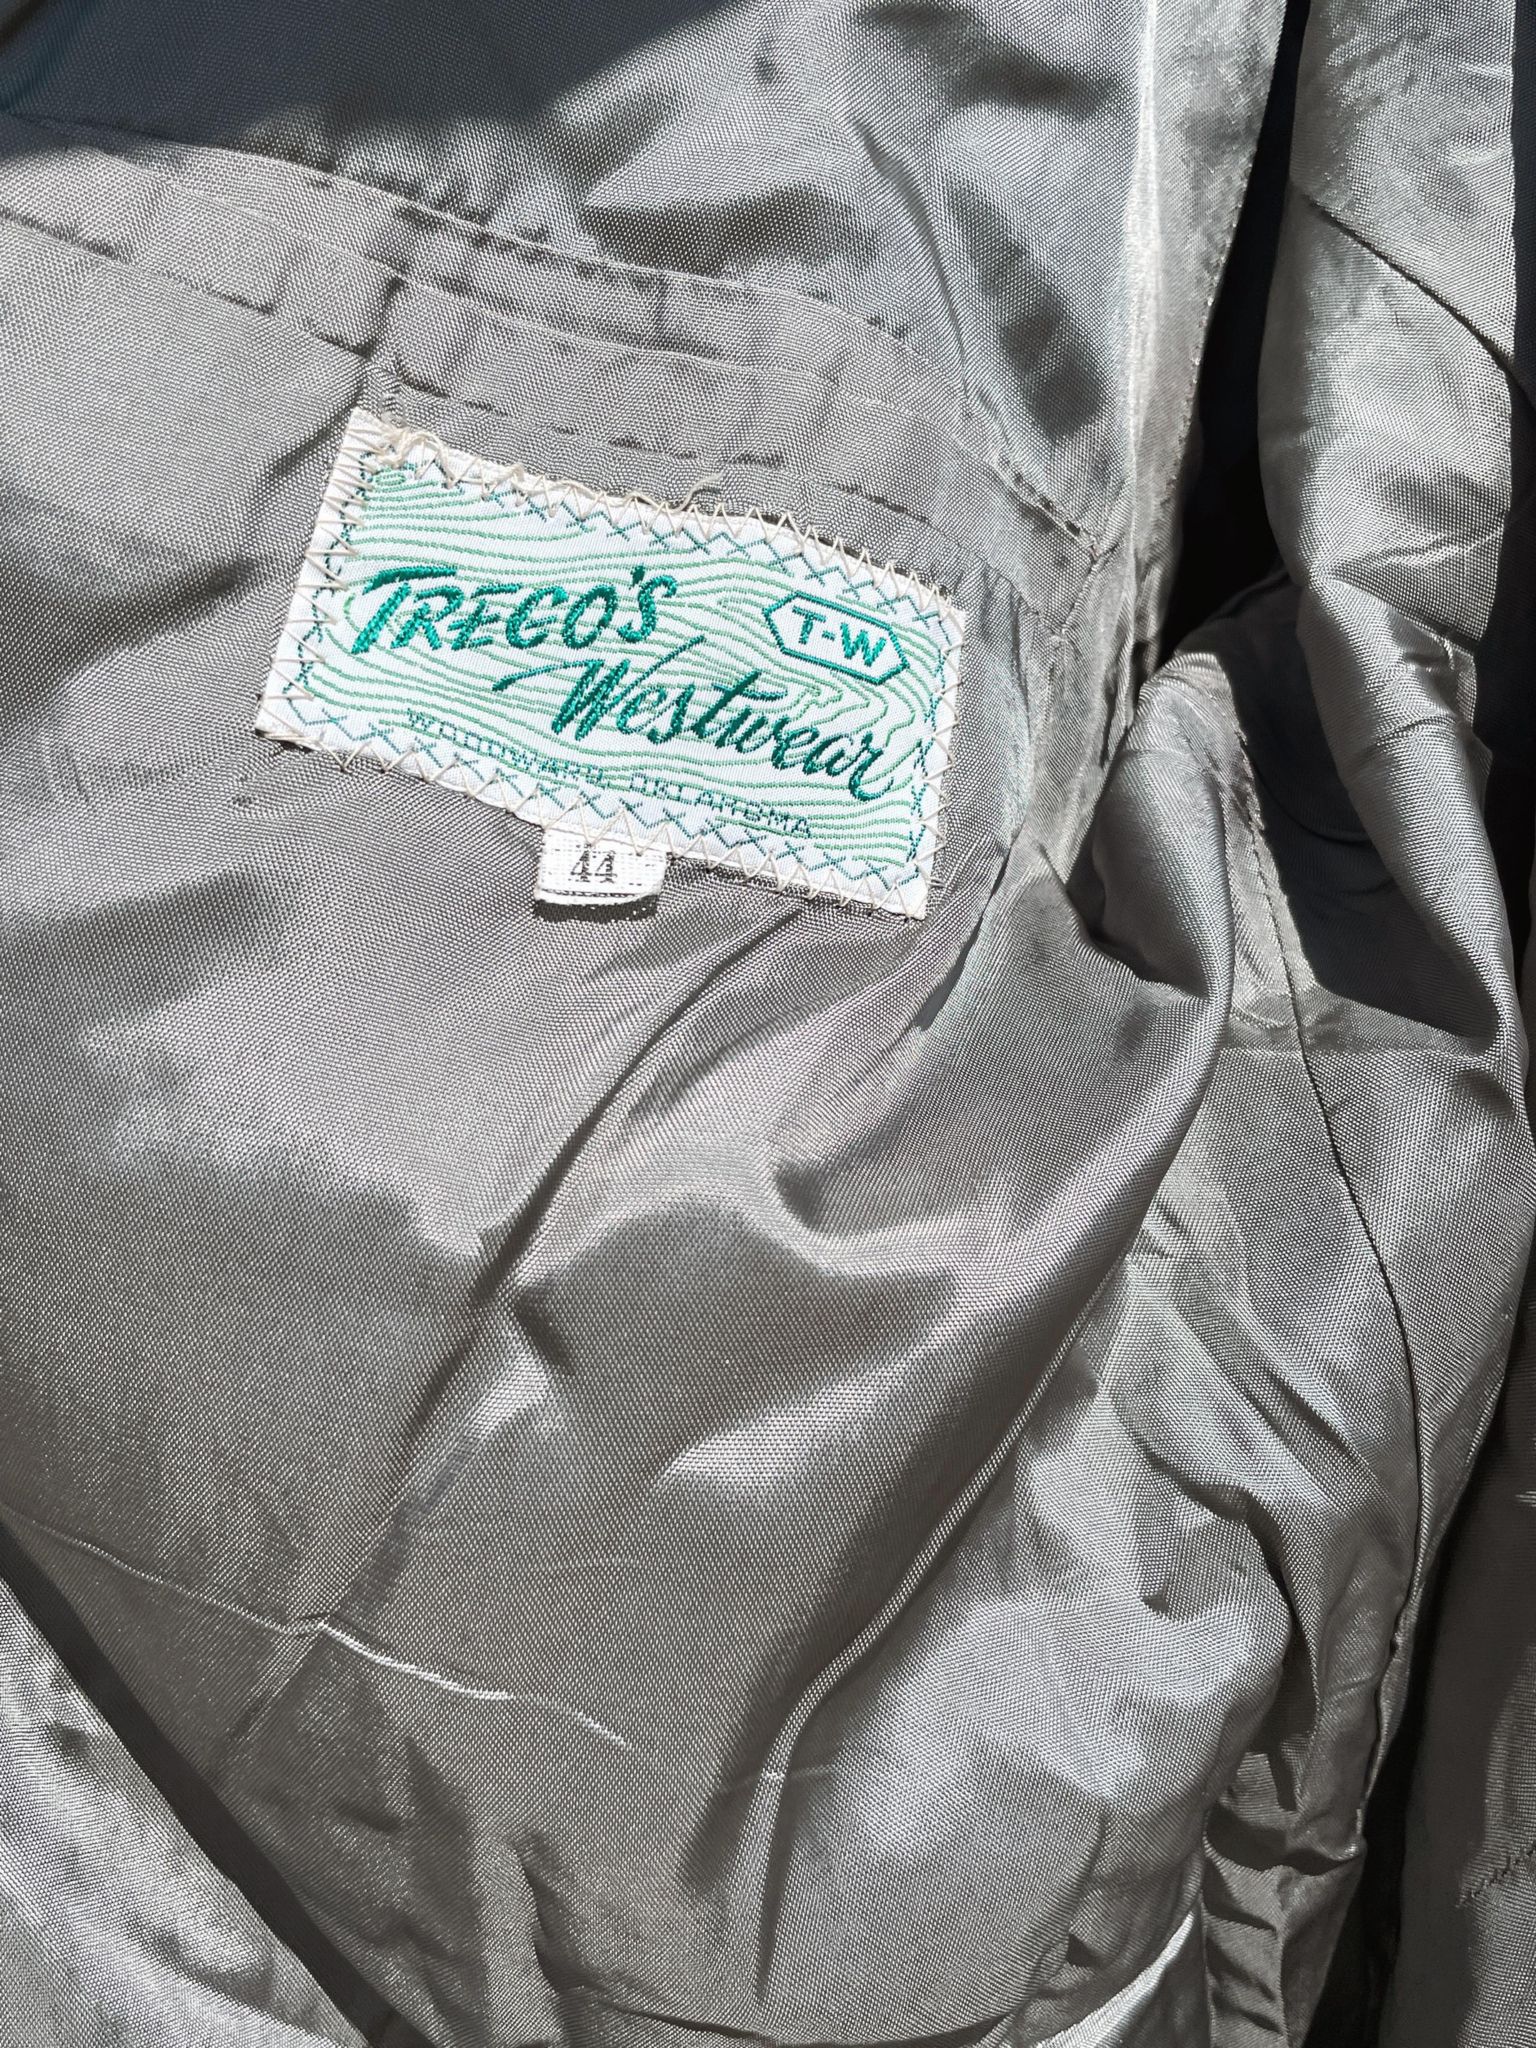 Vintage Trego's West Wear Jacket